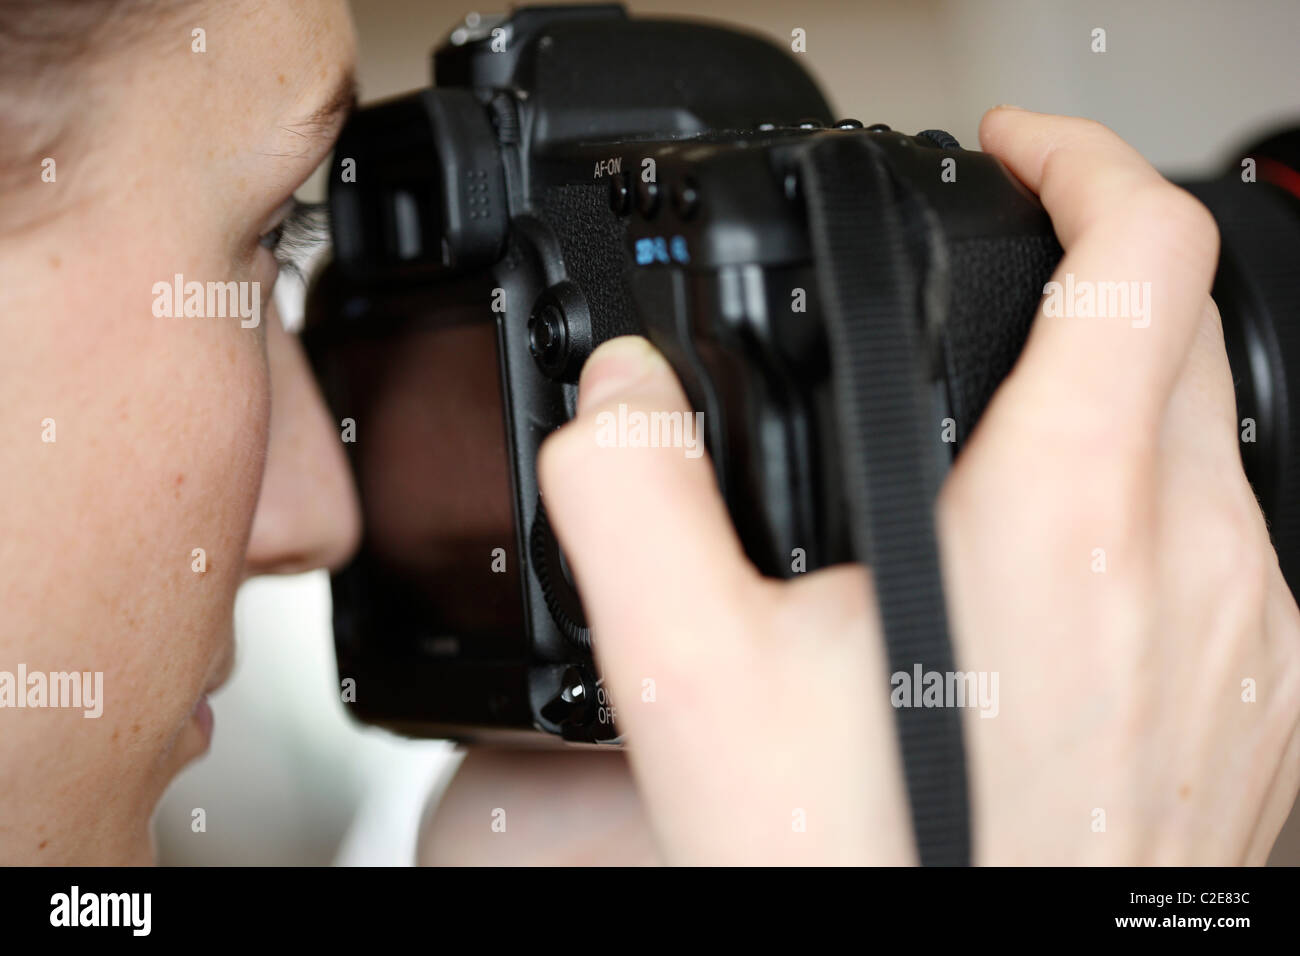 Personne, femme, regarde à travers le viseur d'un appareil photo numérique à objectif interchangeable. Banque D'Images